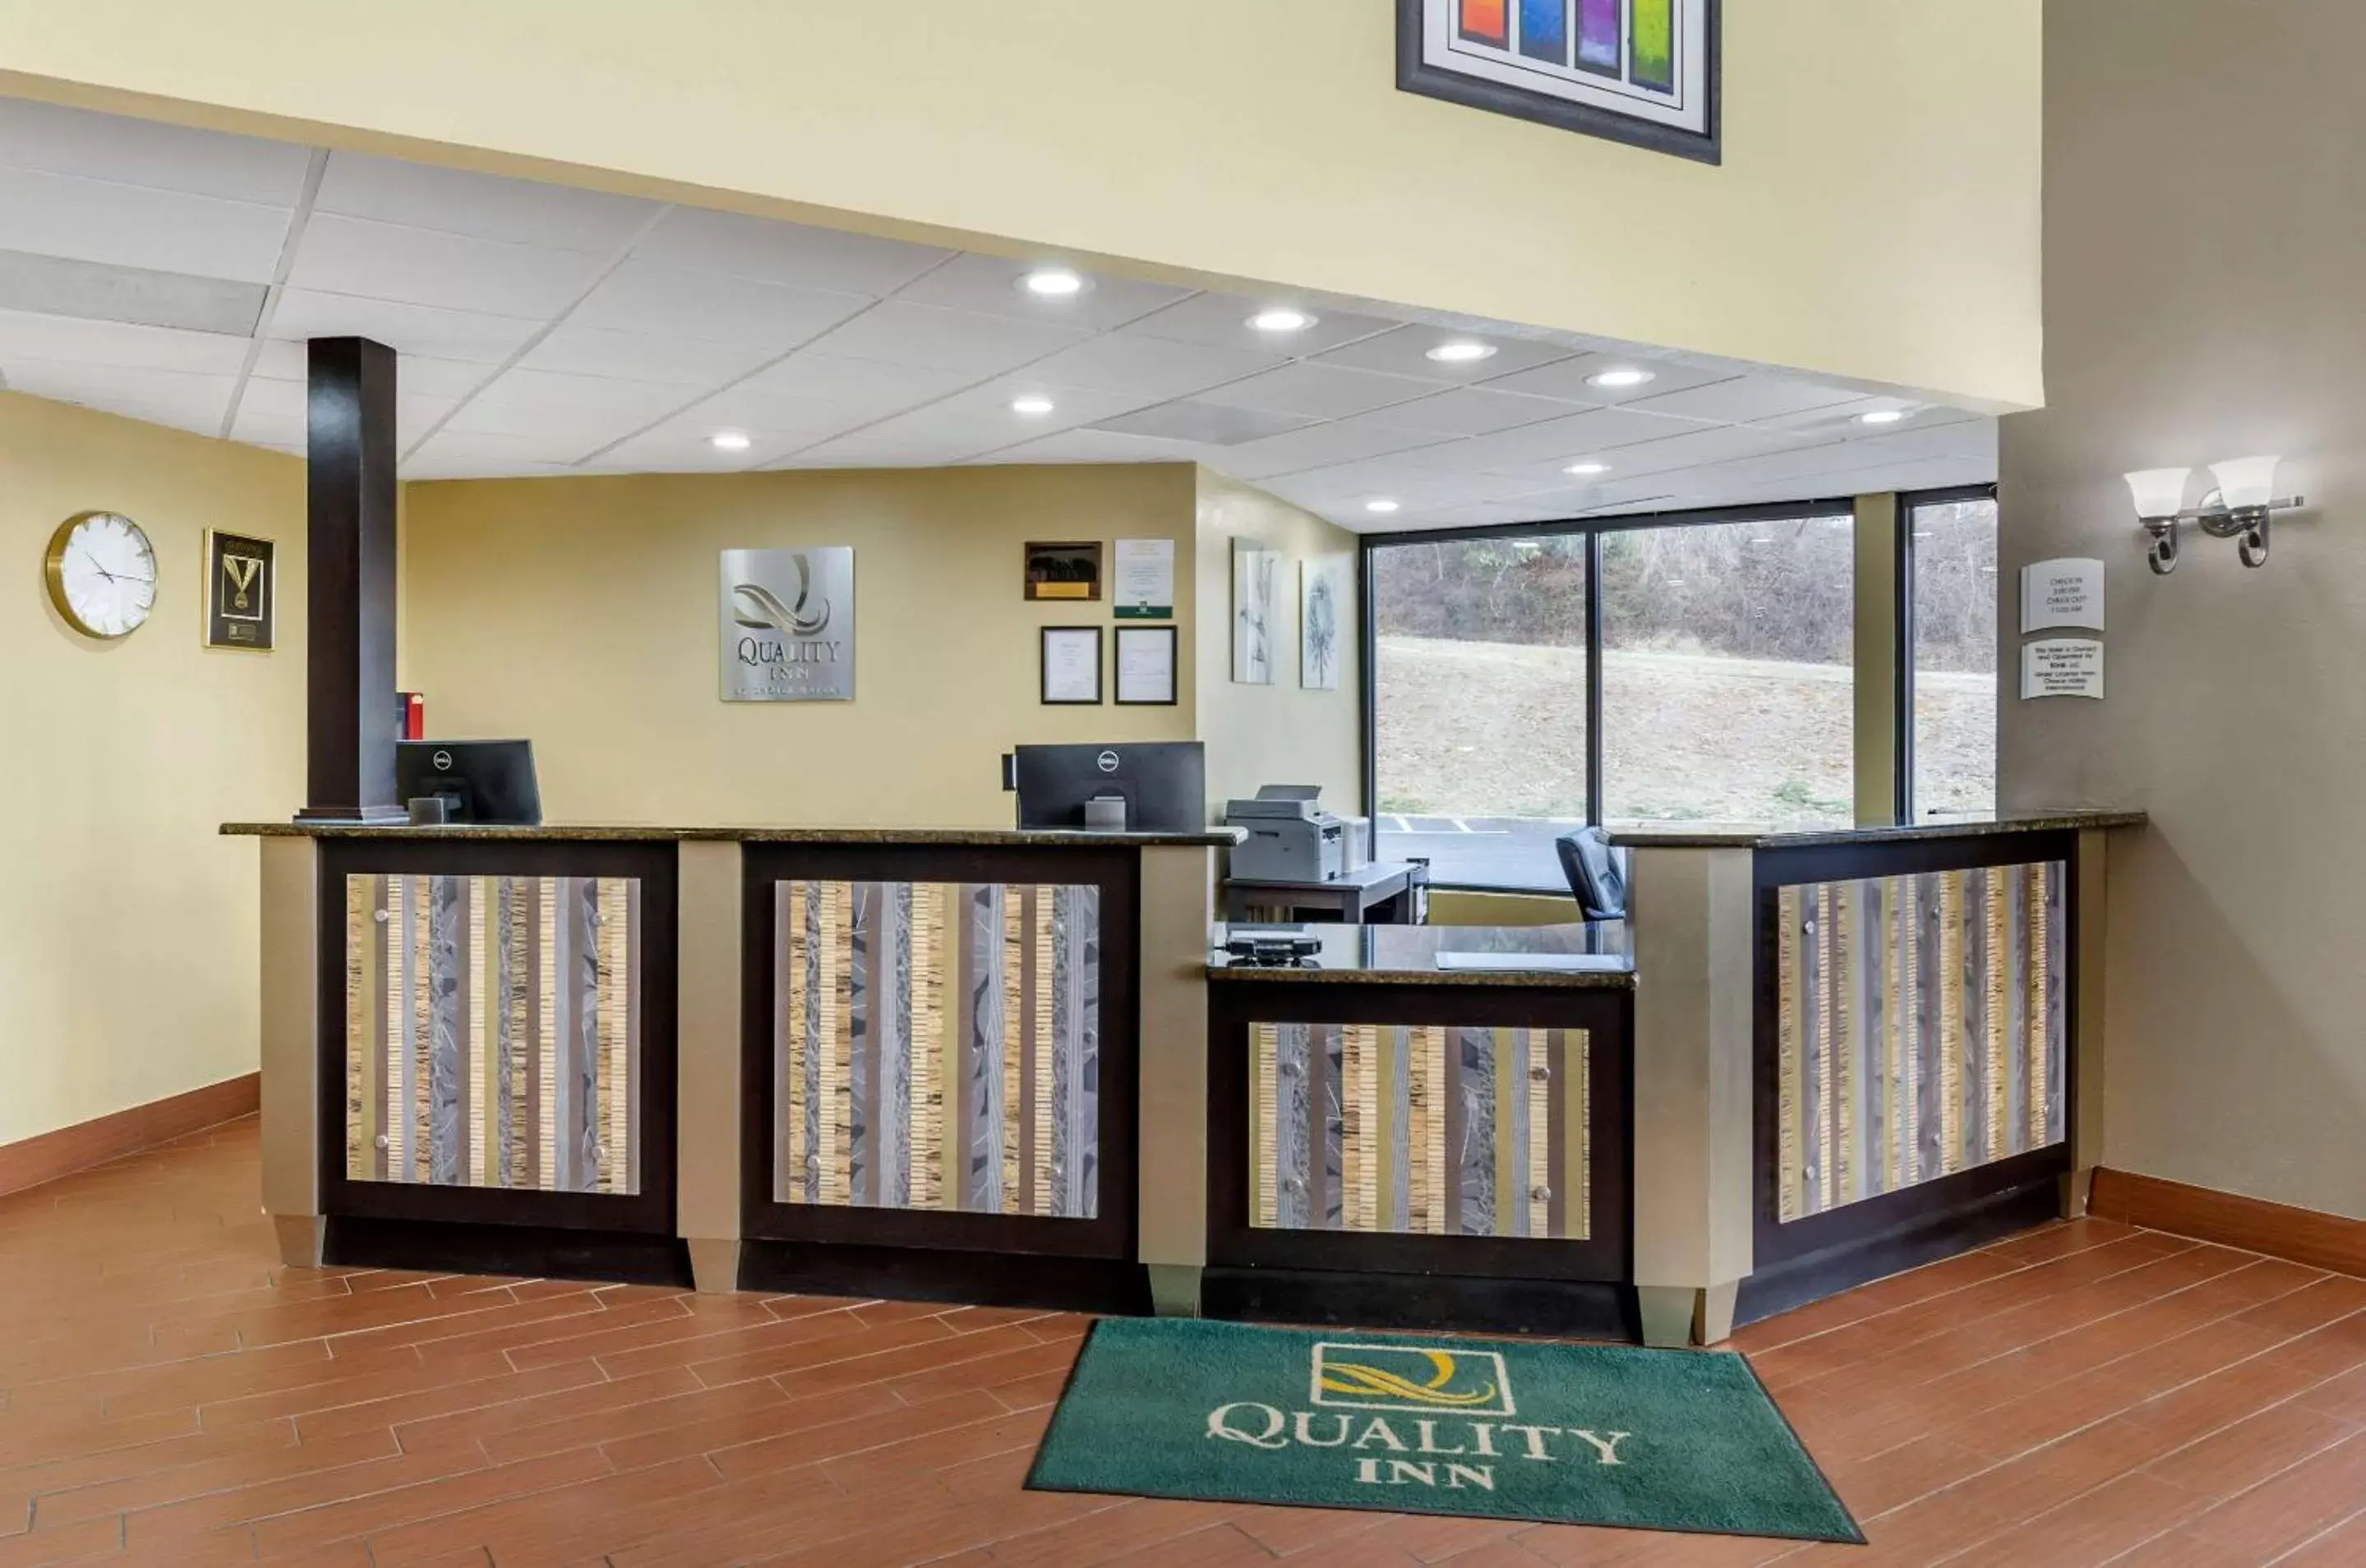 Lobby or reception, Lobby/Reception in Quality Inn